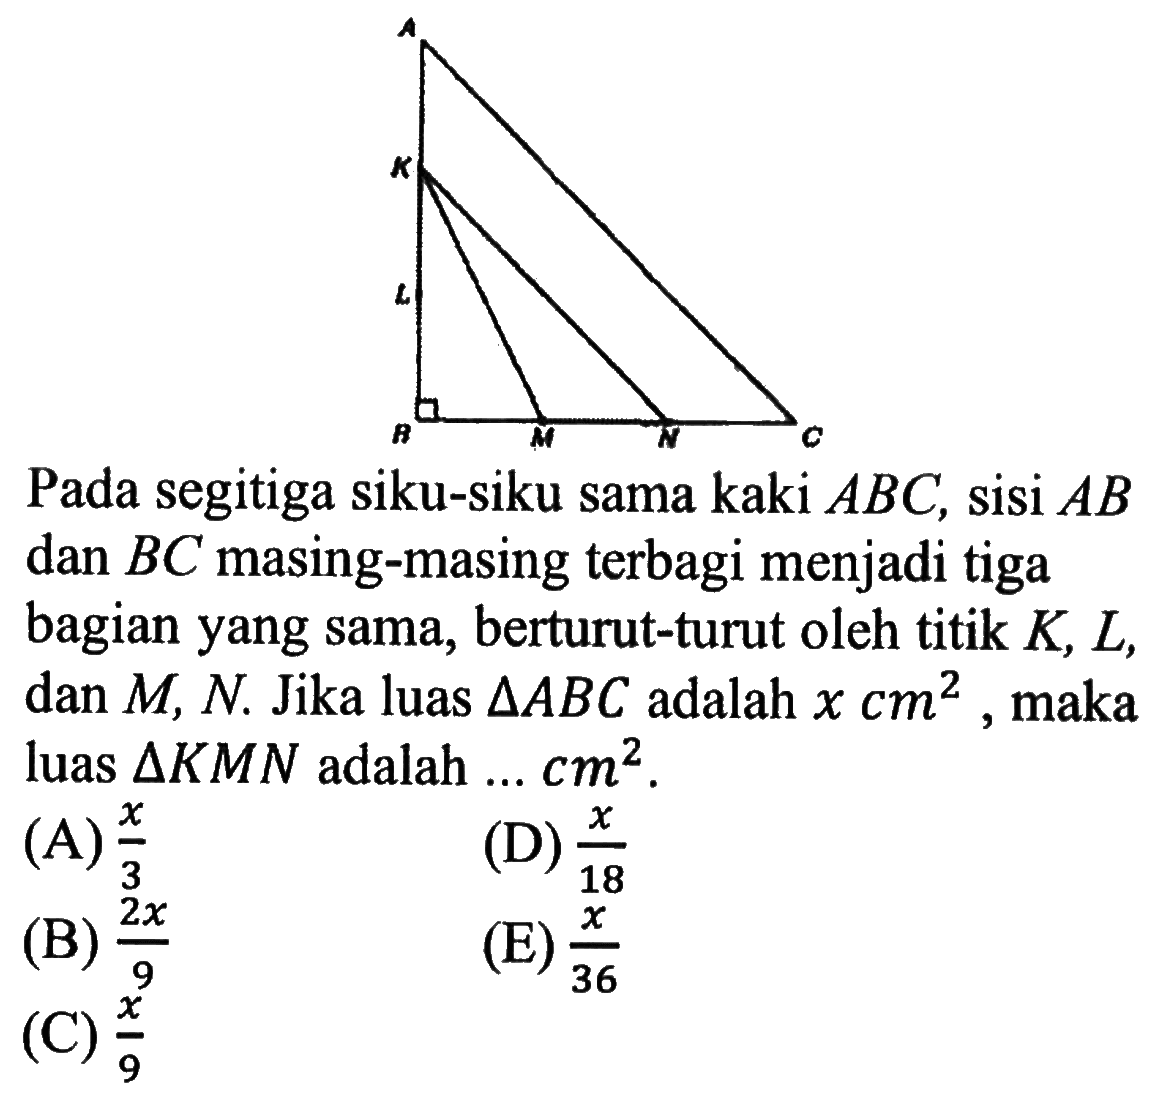 Pada segitiga siku-siku sama kaki ABC, sisi AB dan BC masing-masing terbagi menjadi tiga bagian yang sama, berturut-turut oleh titik K, L, dan M, N. Jika luas segitiga ABC adalah x cm^2, maka luas segitiga KMN adalah  ... cm^2.
